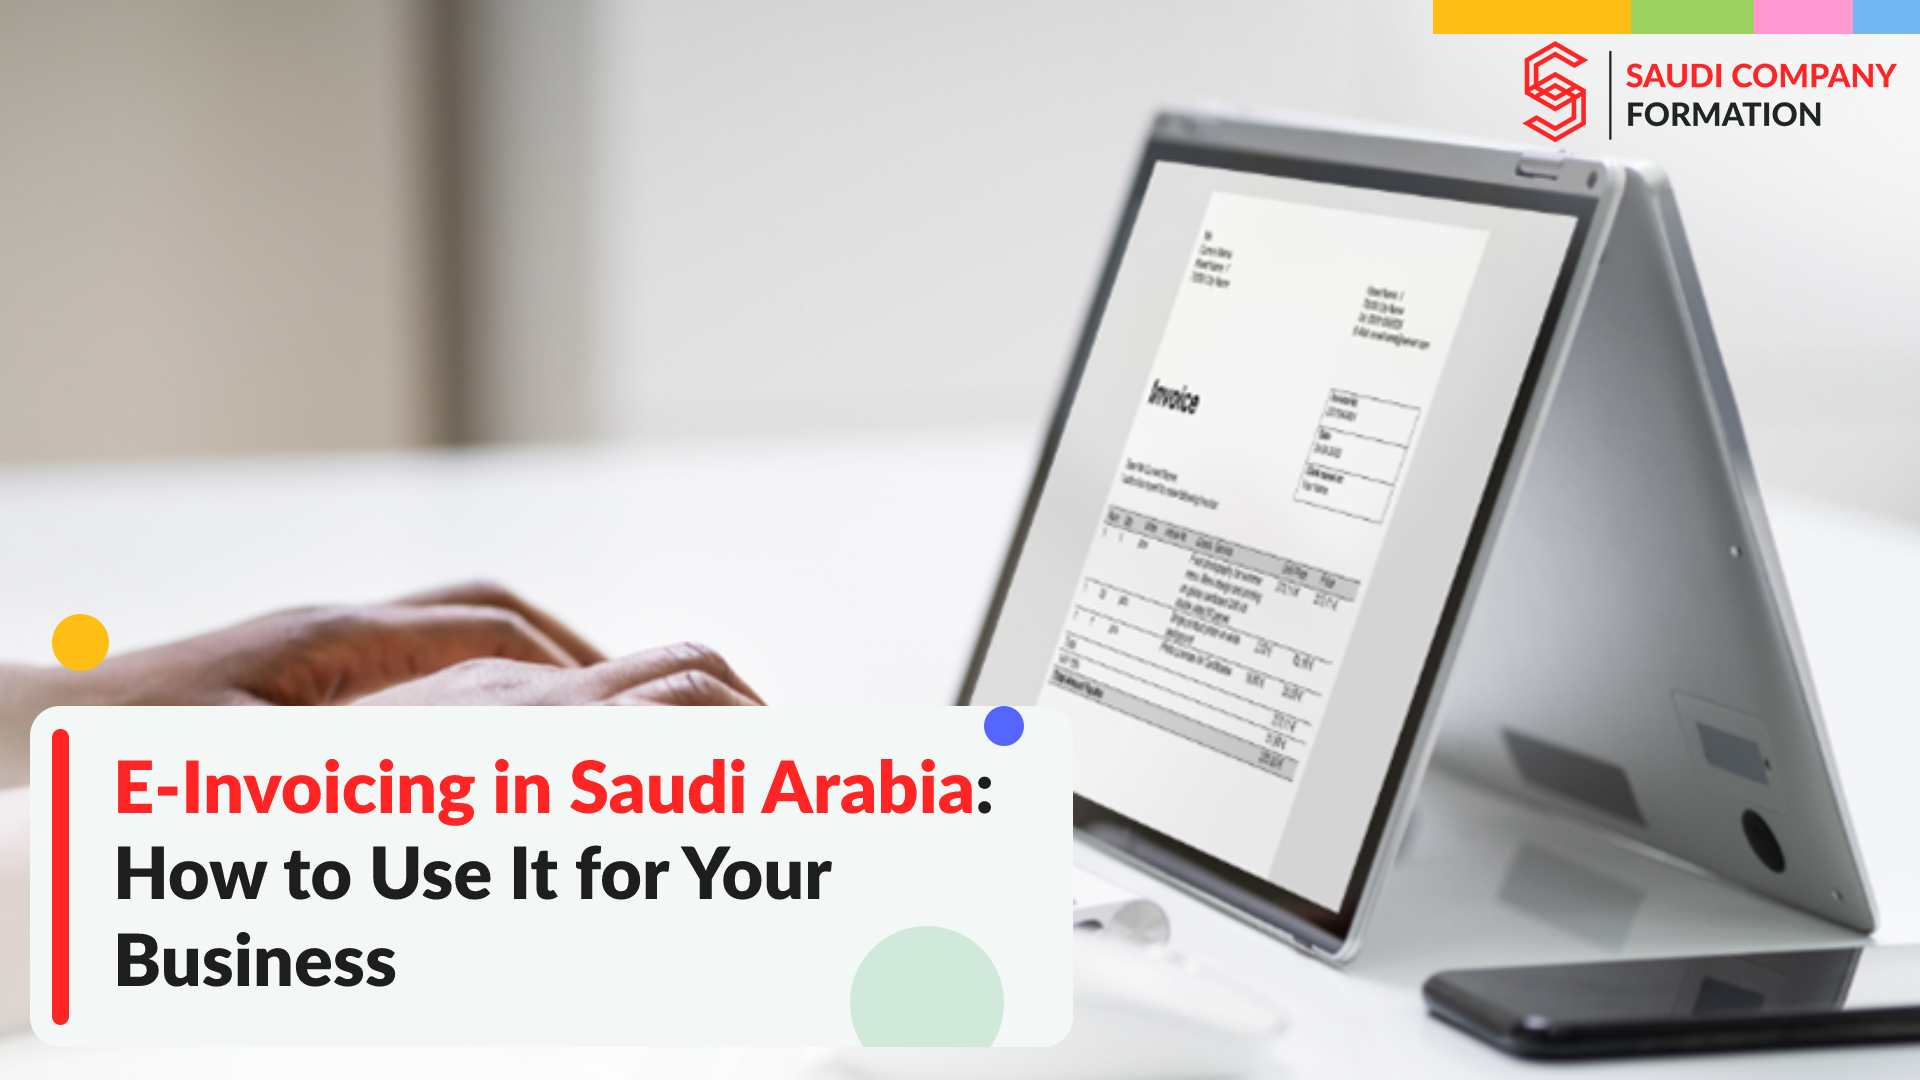 E-Invoicing in Saudi Arabia